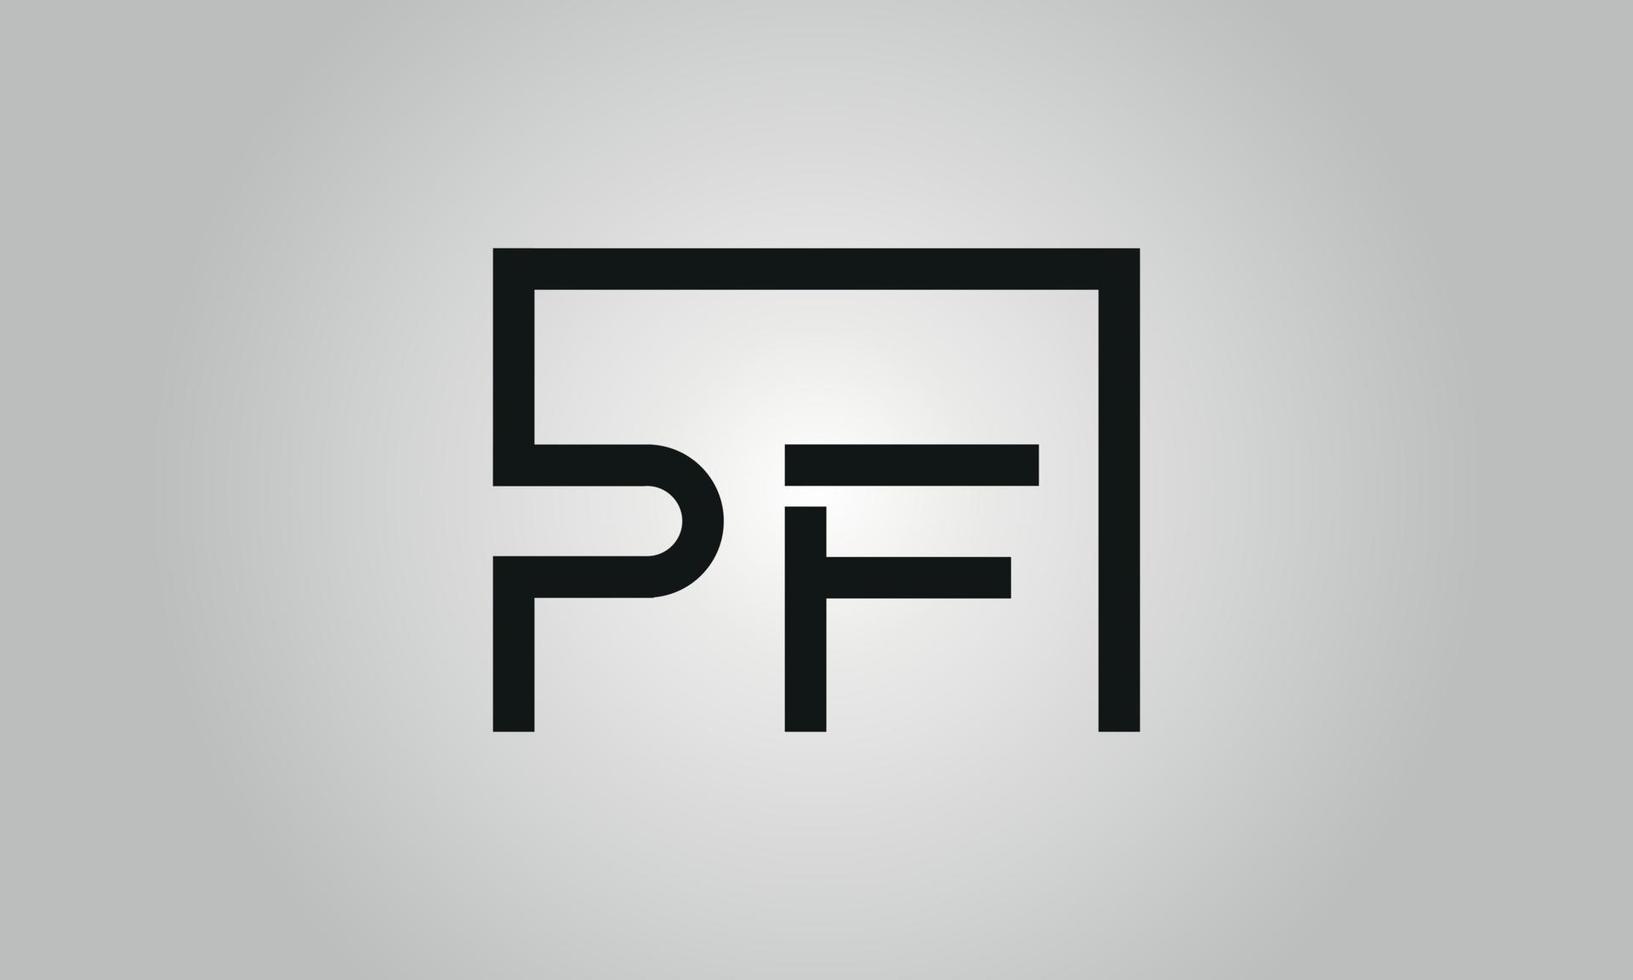 création de logo lettre pf. logo pf avec forme carrée dans le modèle vectoriel gratuit de couleurs noires.